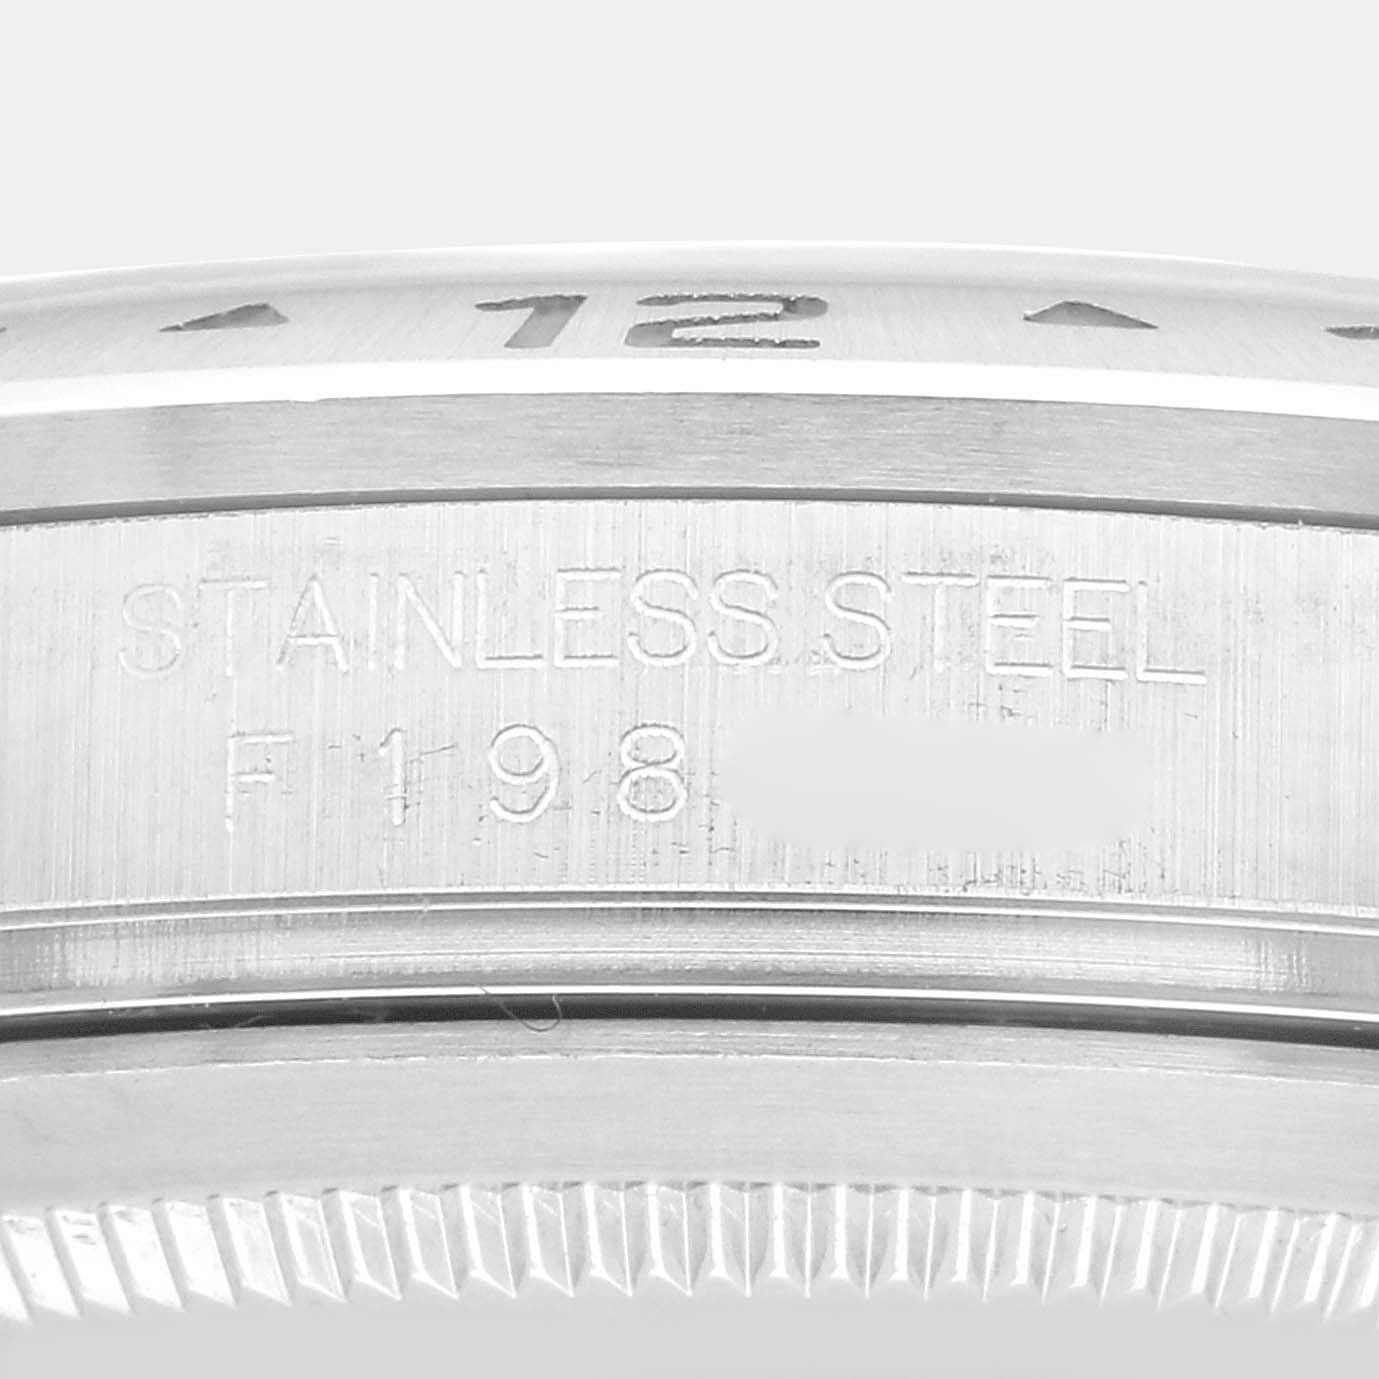 Rolex Explorer II Black Dial Steel Men's Watch 16570 40 Mm